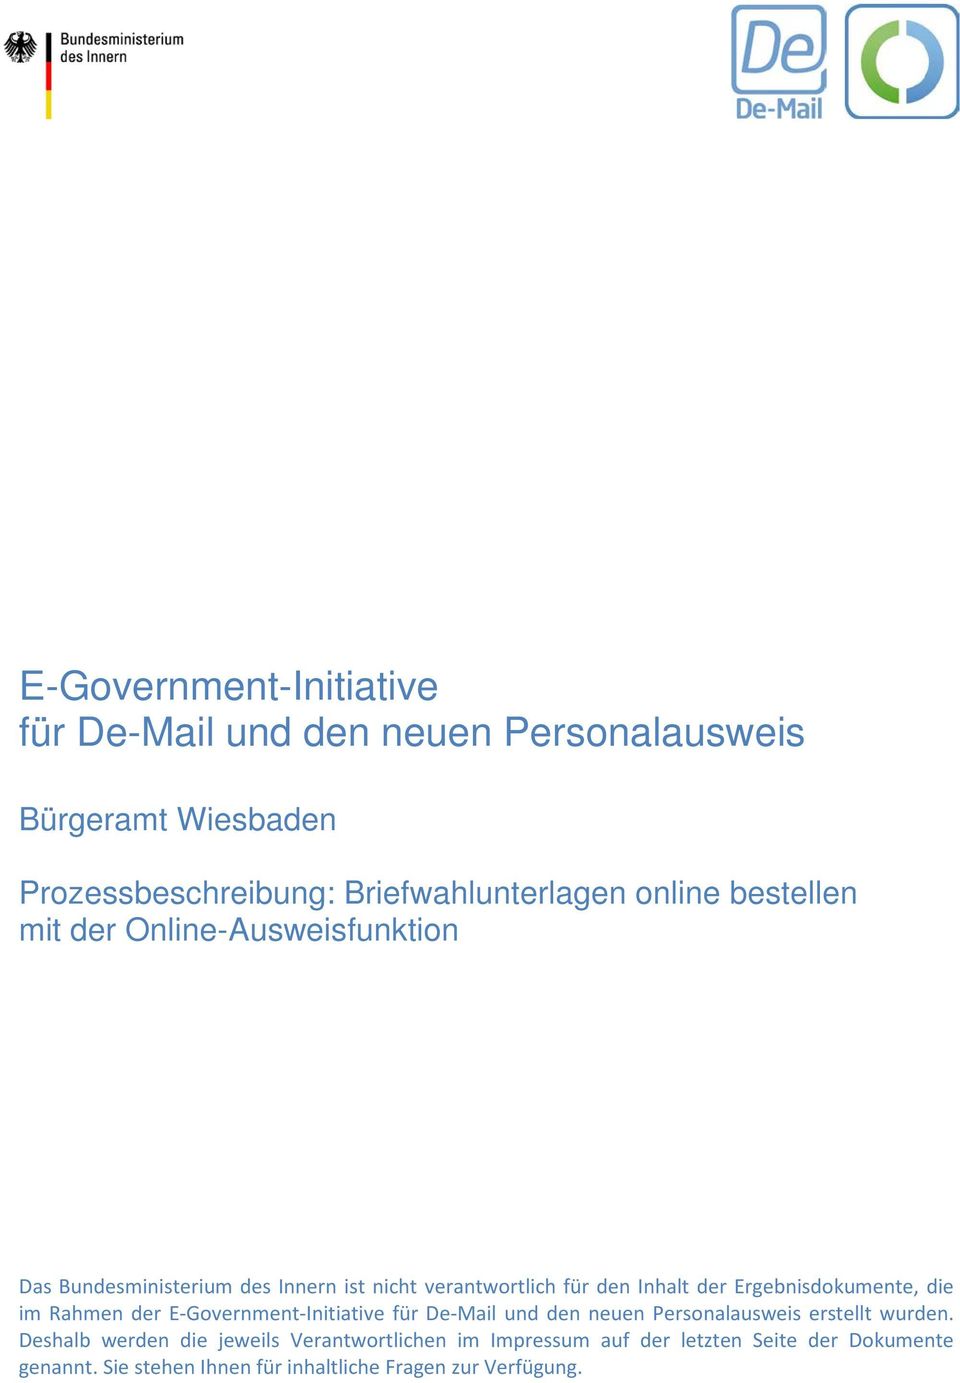 Ergebnisdokumente, die im Rahmen der E-Government-Initiative für De-Mail und den neuen Personalausweis erstellt wurden.